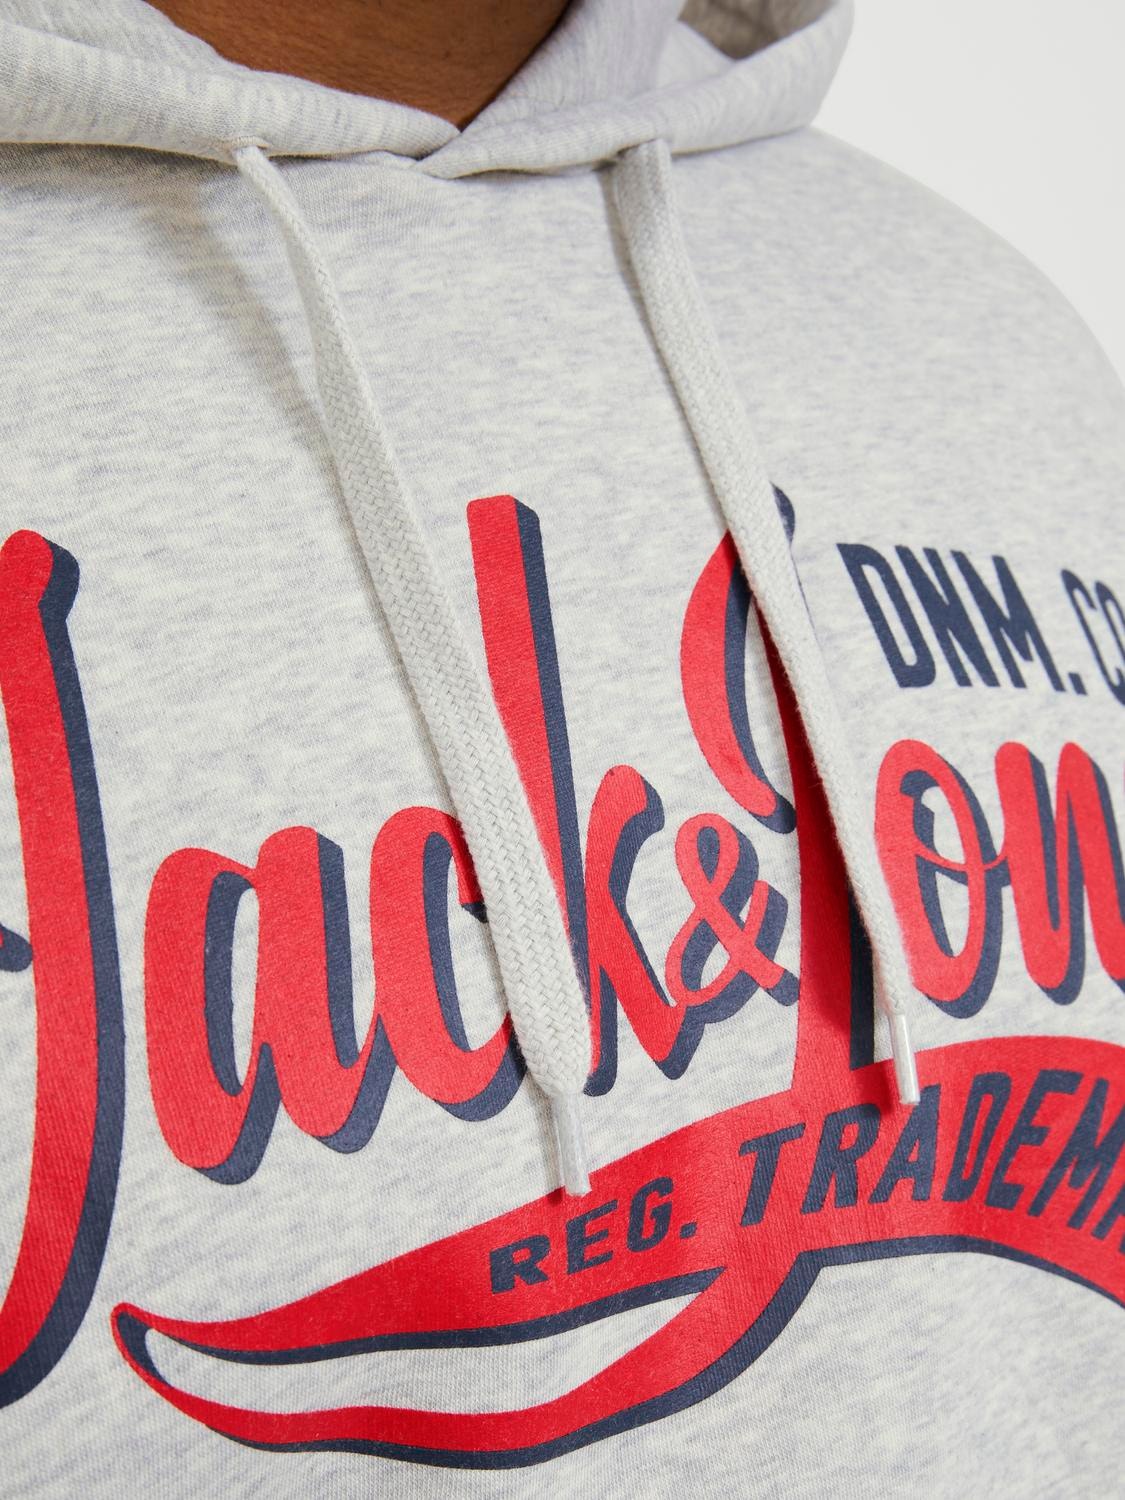 Jack & Jones Plus Size Sweat à capuche Logo -White Melange - 12236803